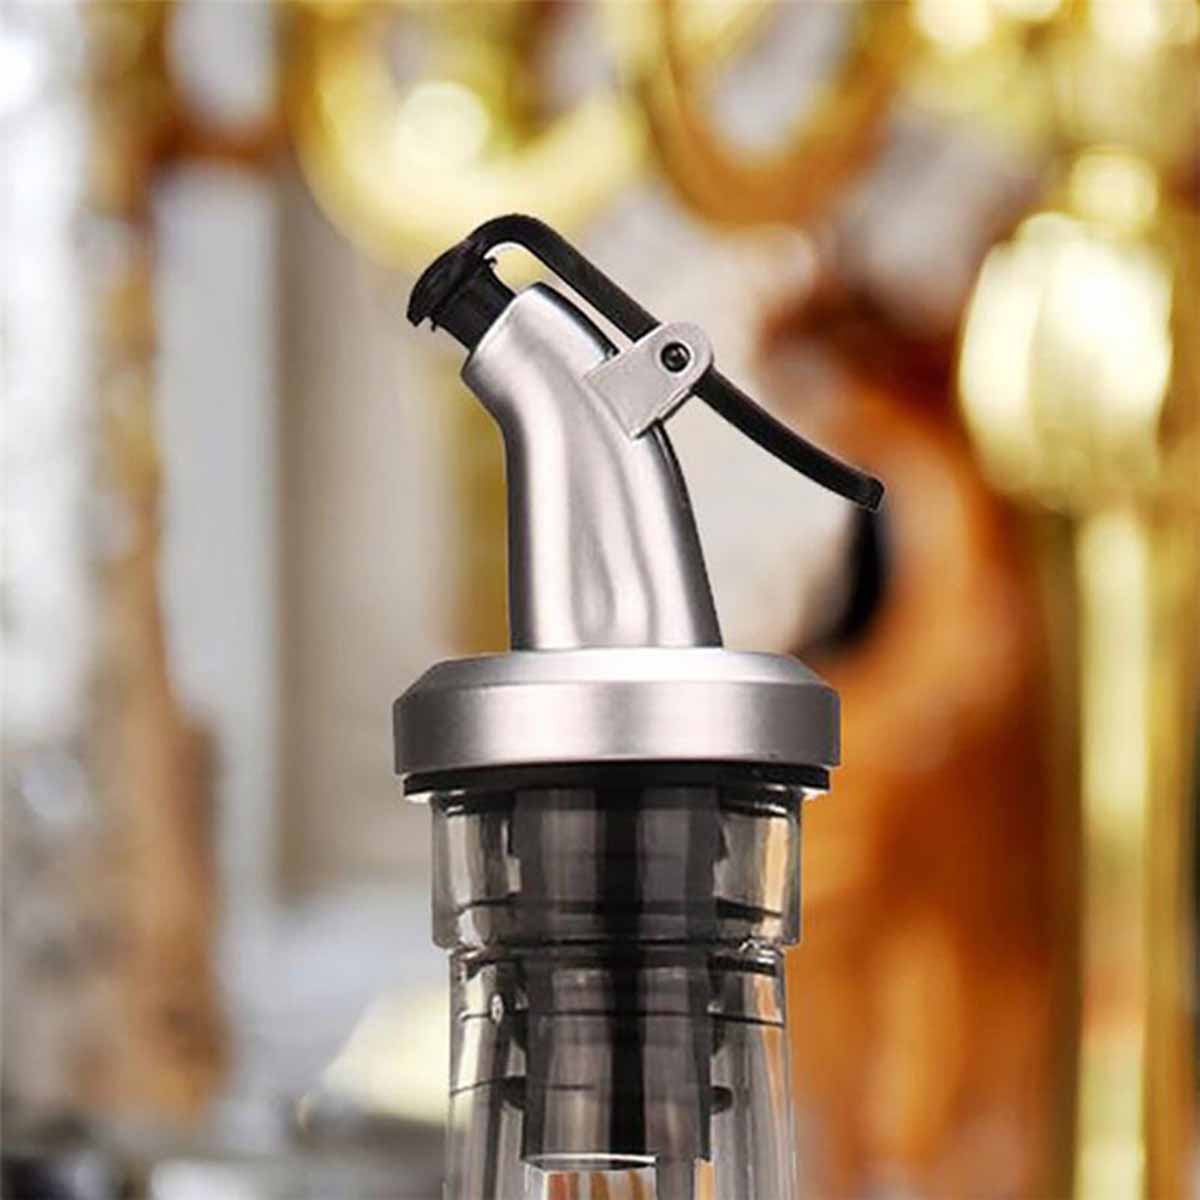 Grease-Nozzle-Sprayer-Liquor-Dispenser-Pourers-Flip-Top-Stopper-For-Glass-Bottle-Olive-Sauce-Vinegar-1489578-3